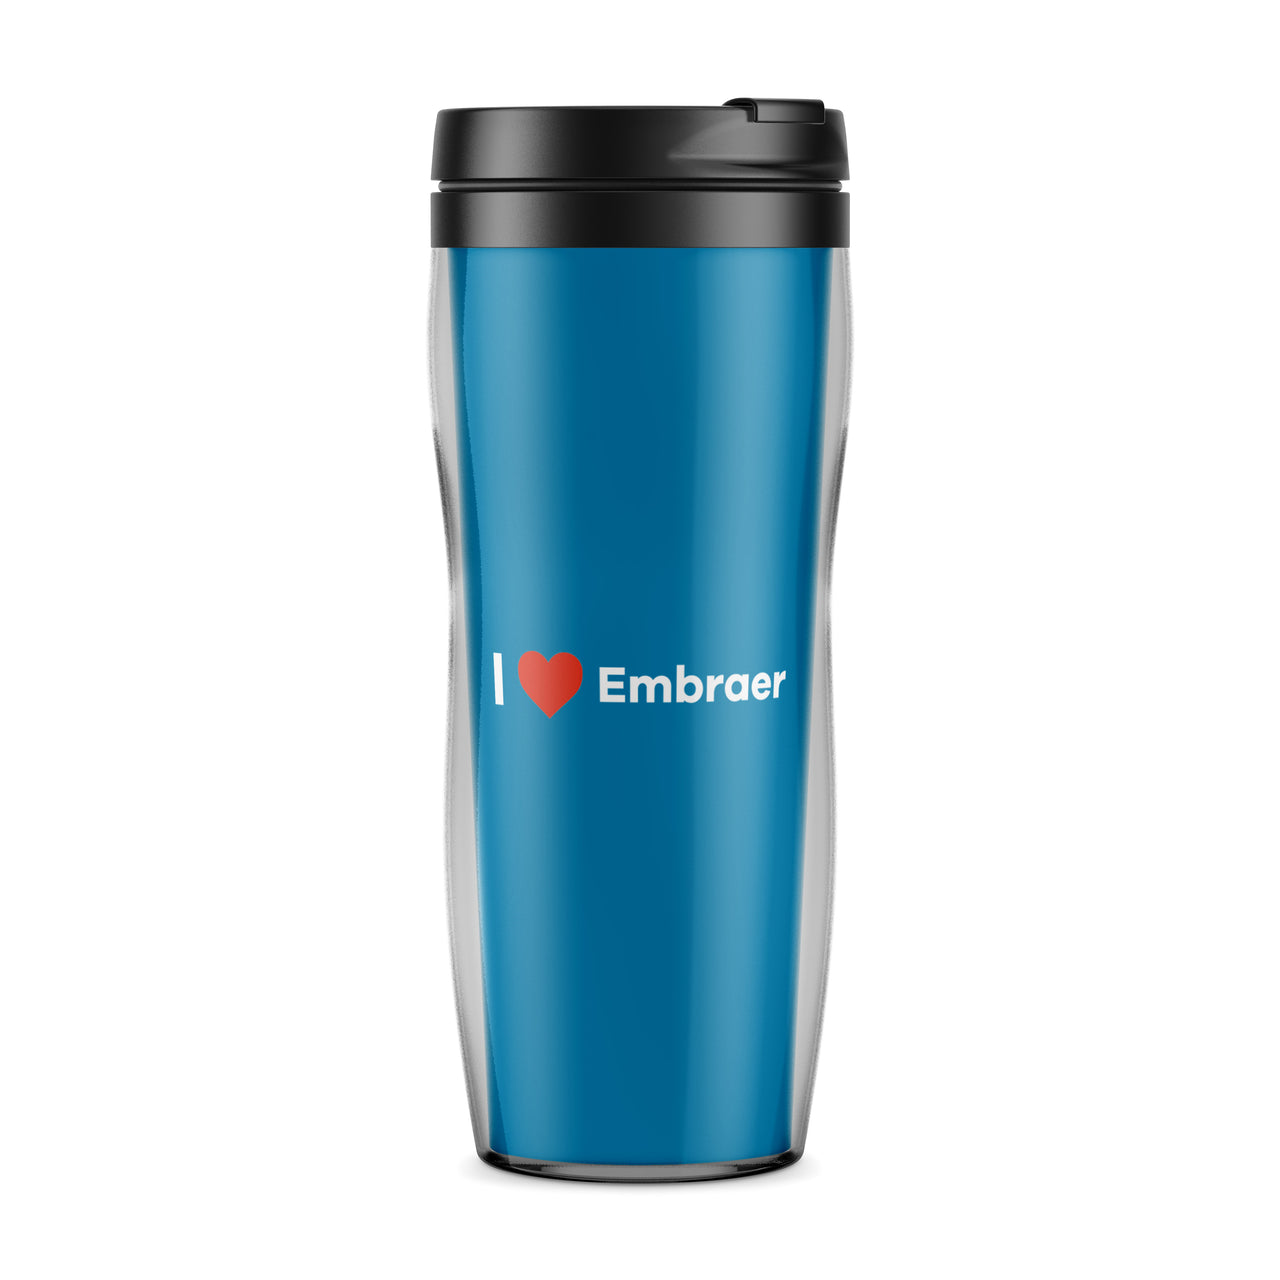 I Love Embraer Designed Travel Mugs